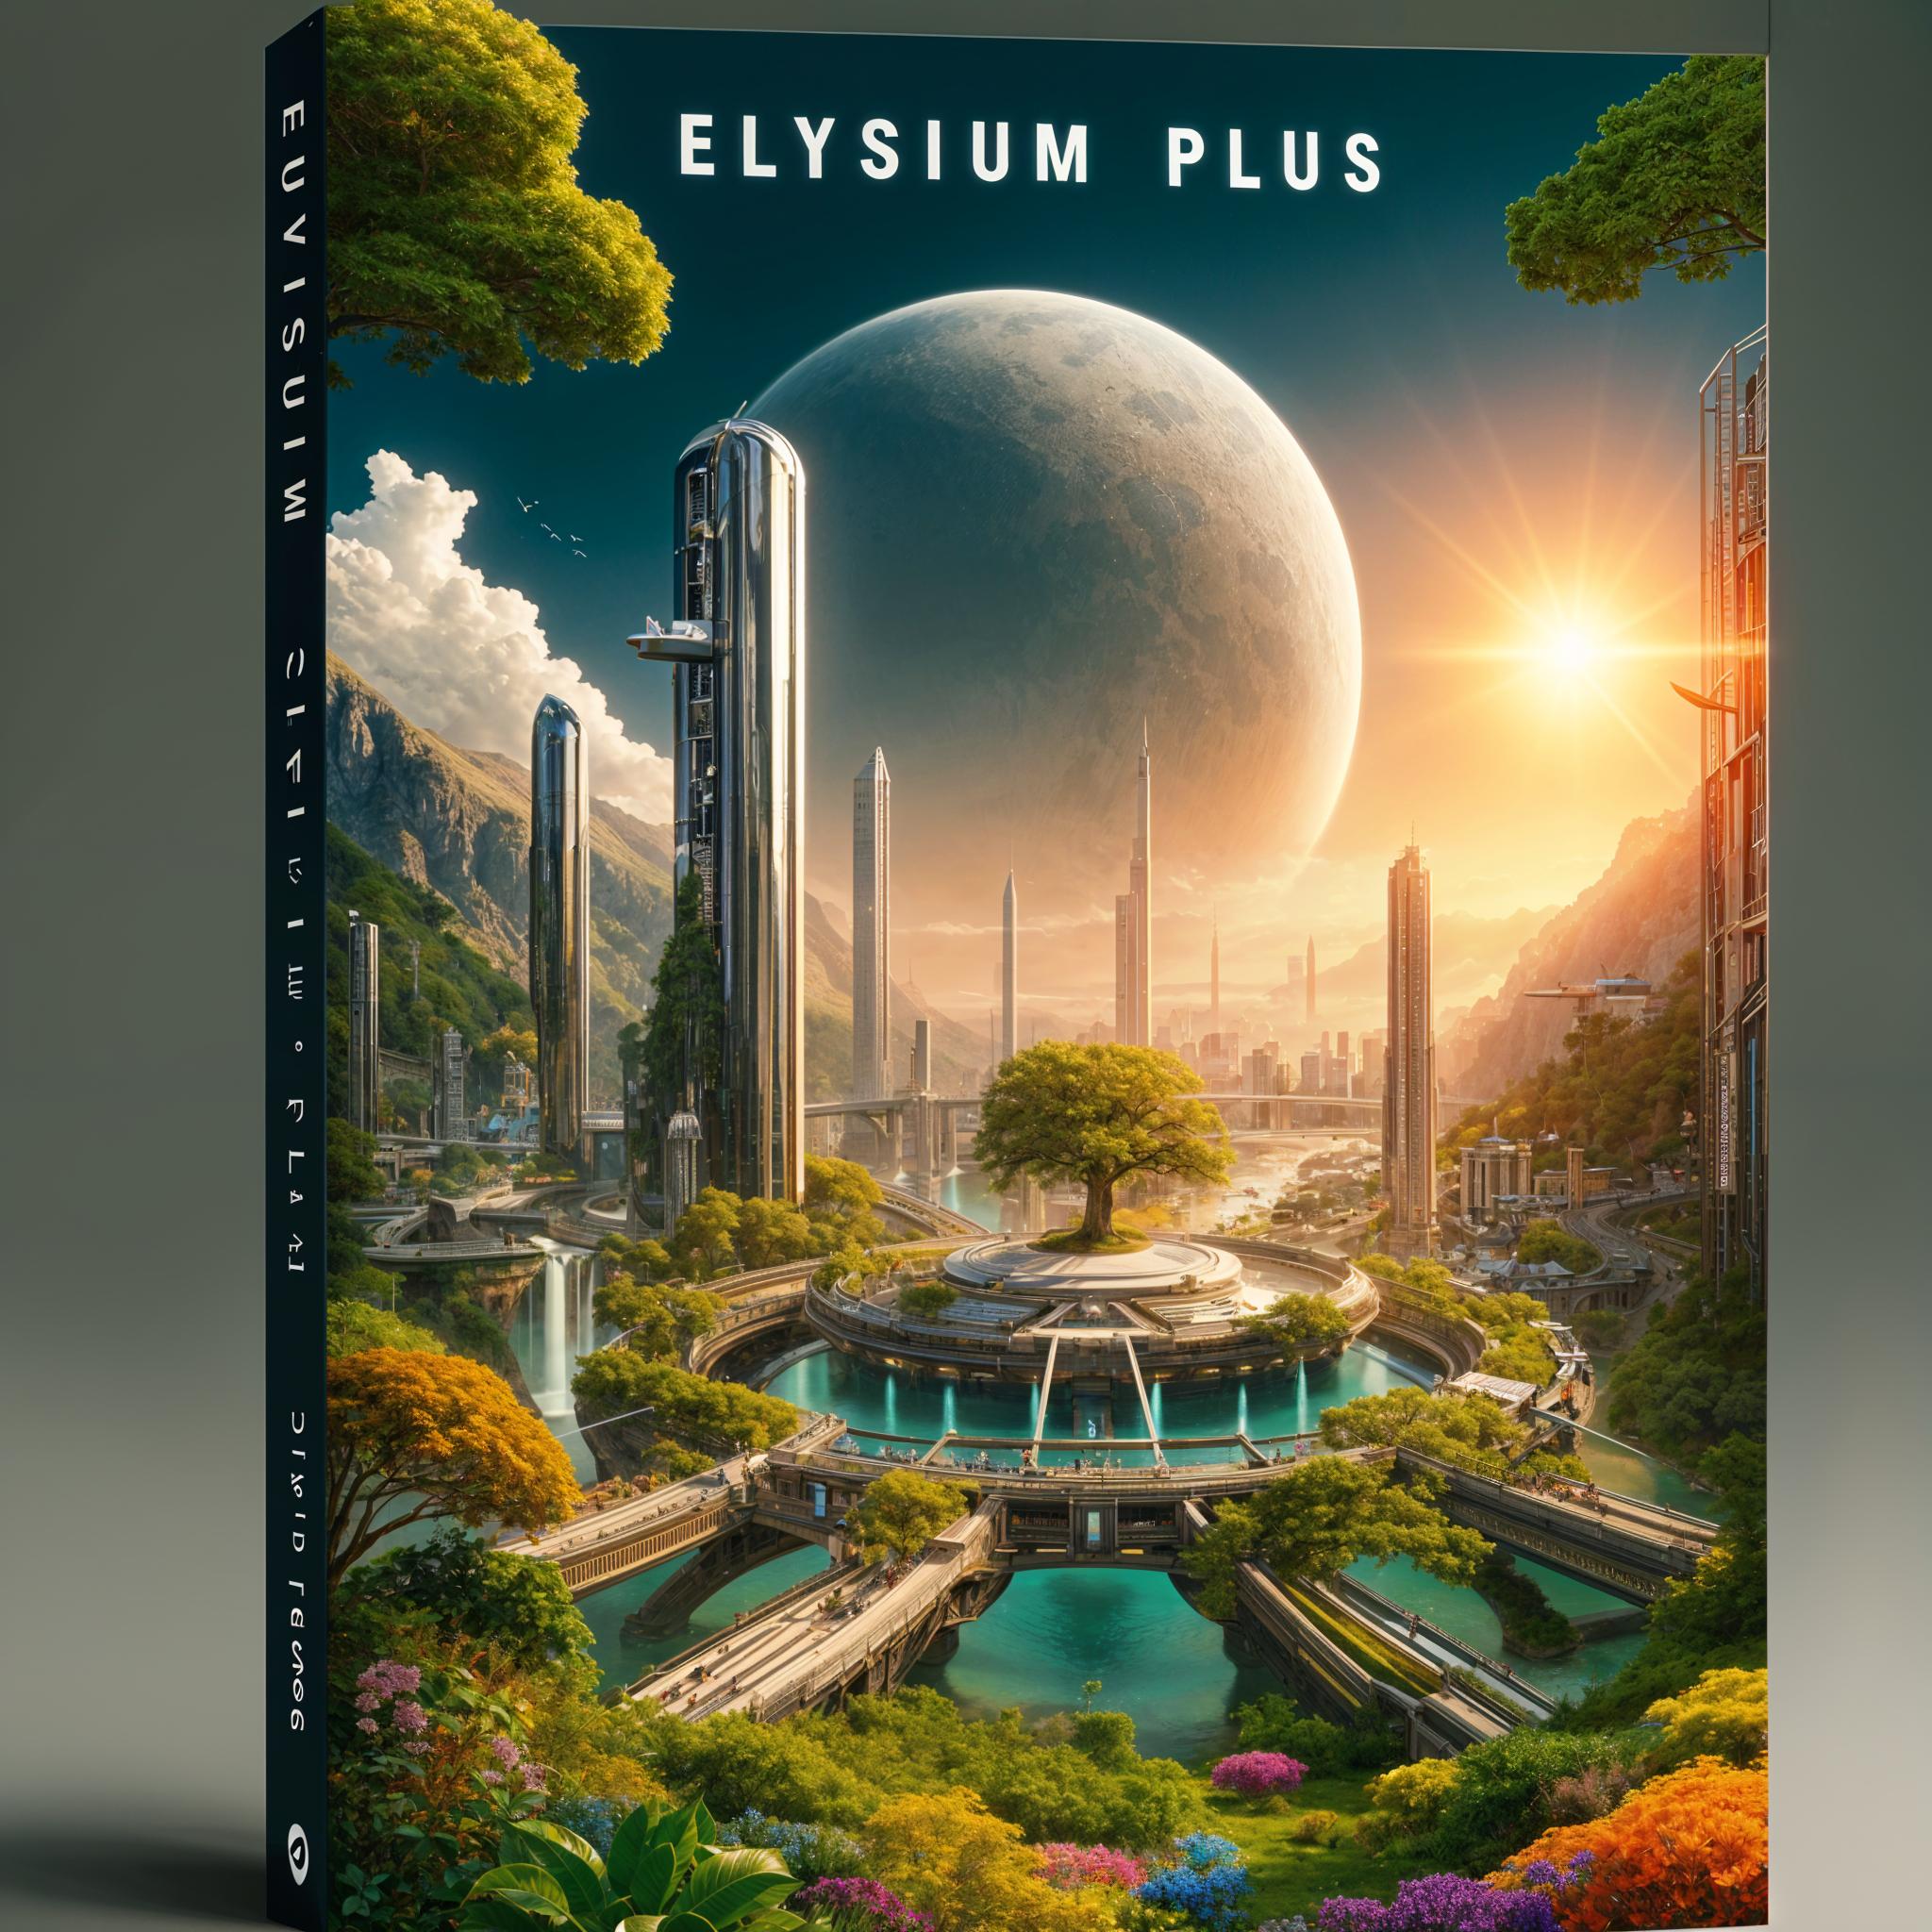 Elysium Plus by David Pearce